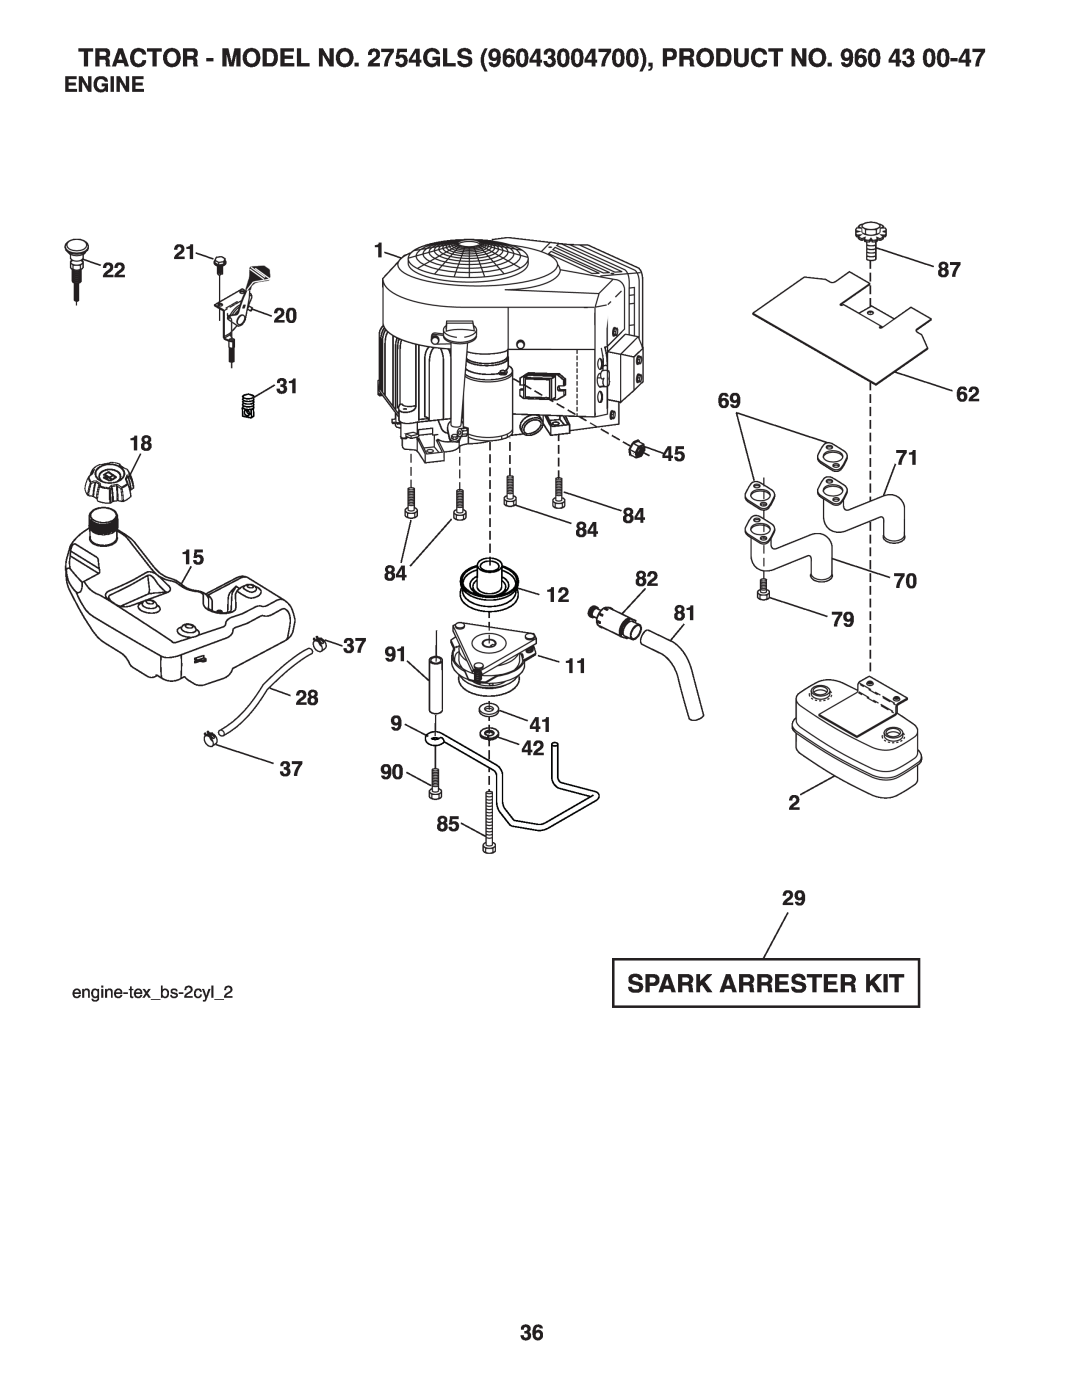 Husqvarna 2754 GLS manual Spark Arrester Kit, Engine, 6962, 8270 8179, TRACTOR - MODEL NO. 2754GLS 96043004700, PRODUCT NO 